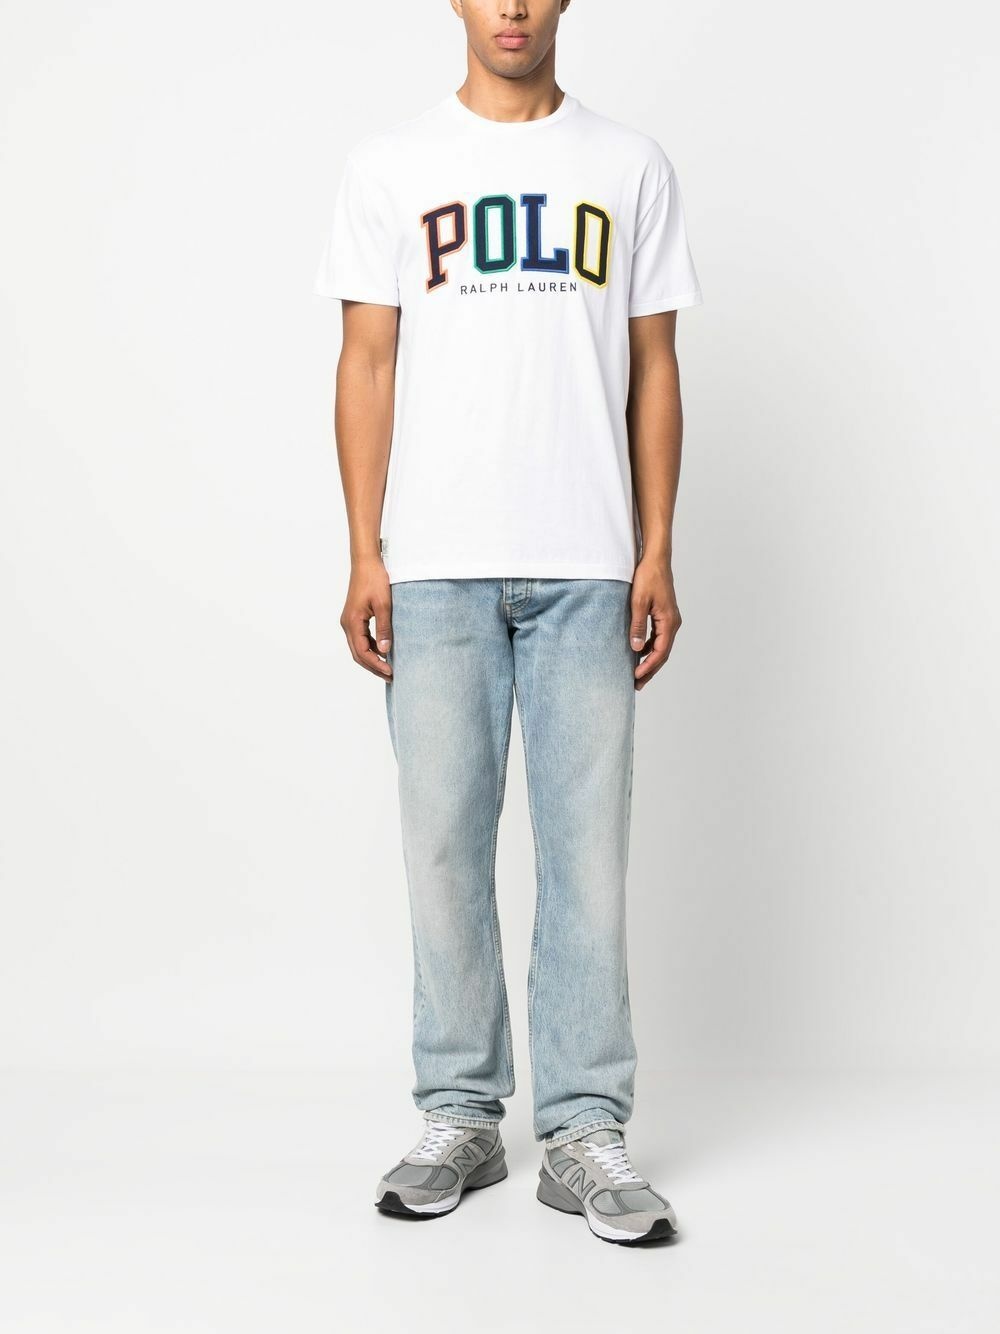 POLO RALPH LAUREN - Logo T-shirt Polo Ralph Lauren